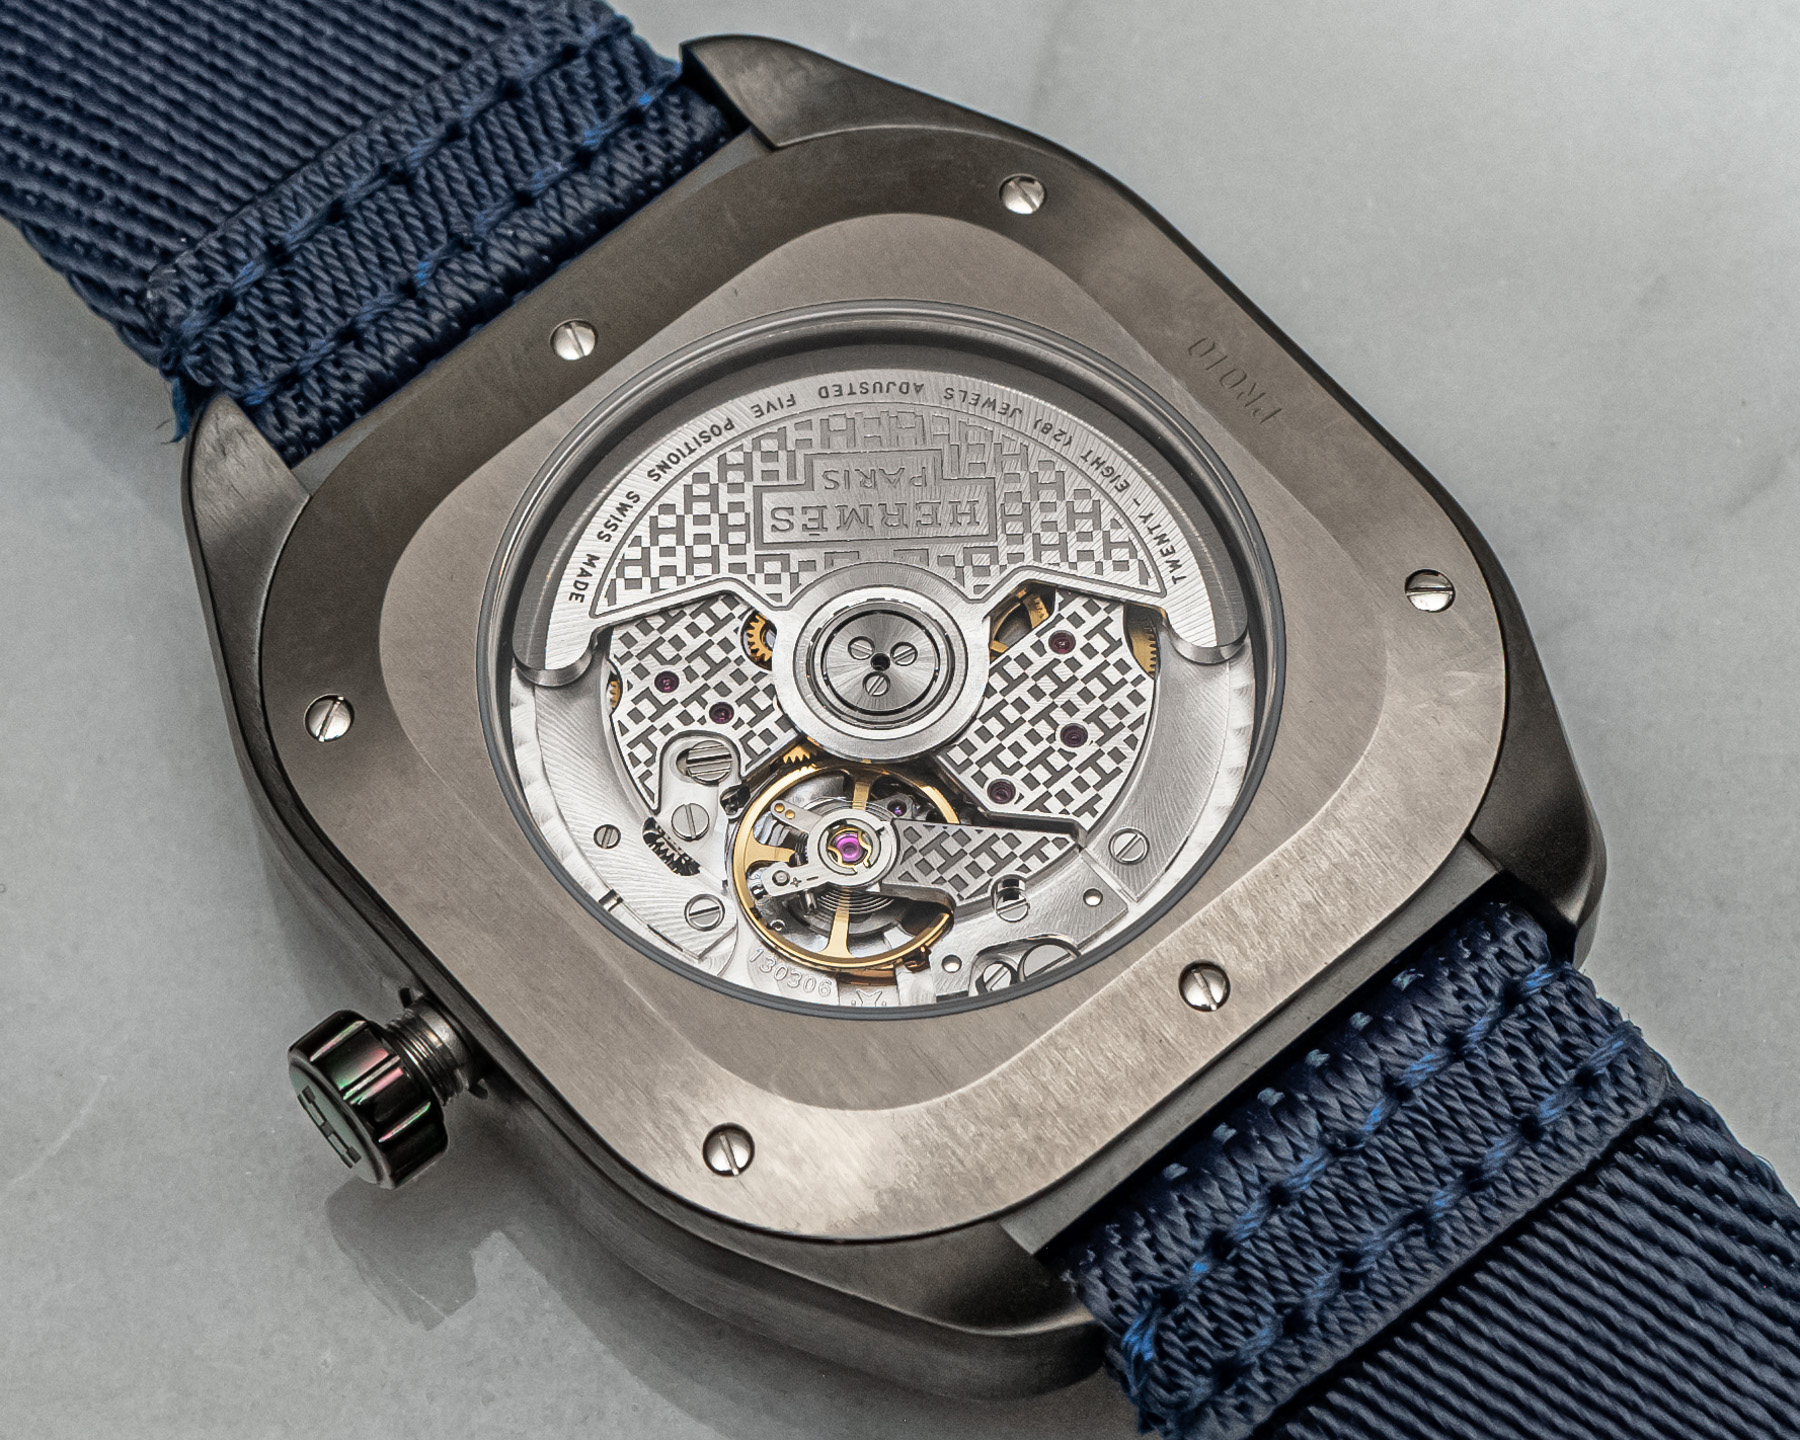 爱马仕推出全新H08系列腕表-休闲日常风格手表的魅力